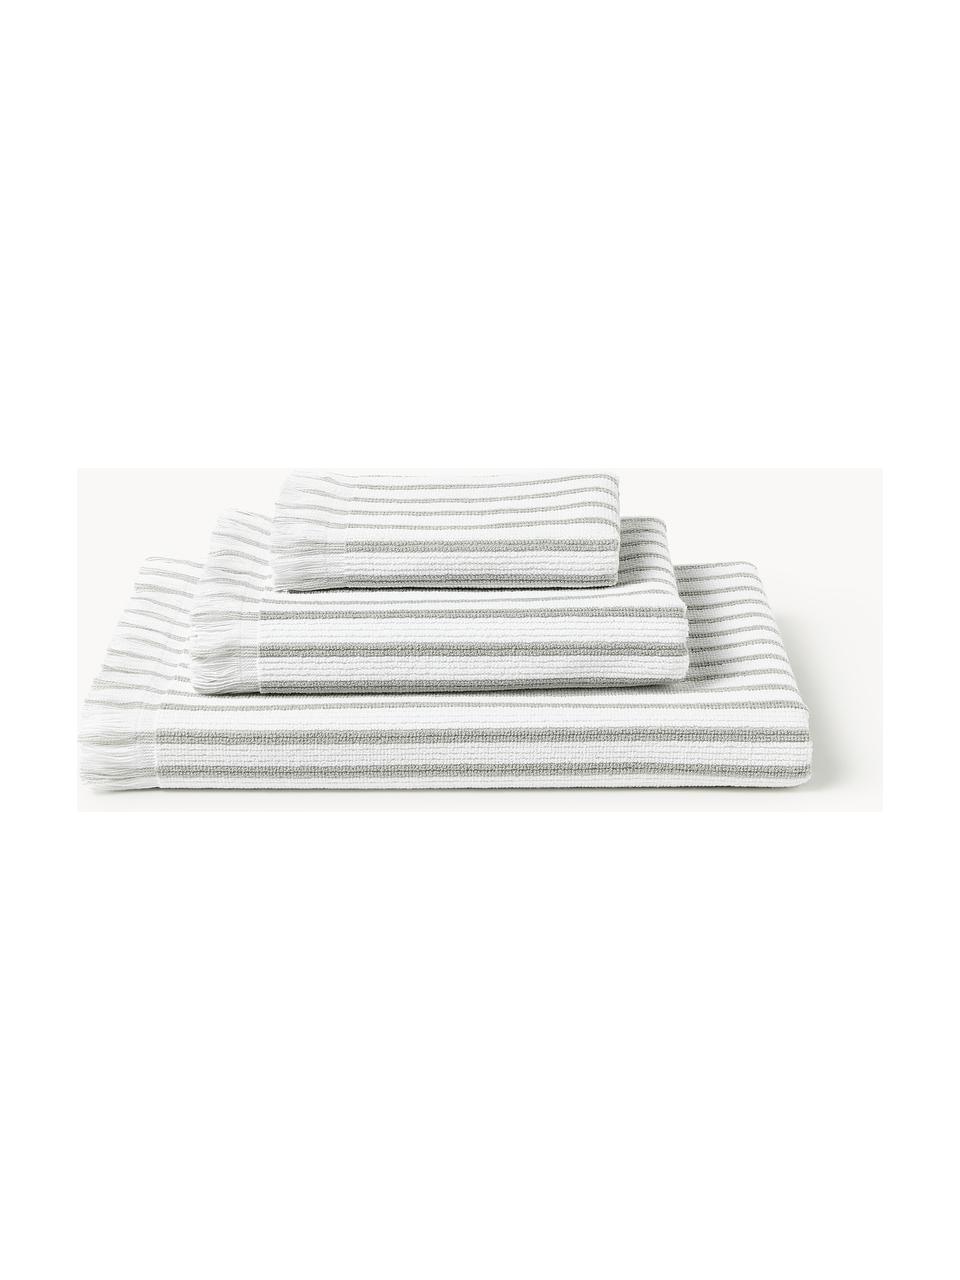 Sada ručníků Irma, různé velikosti, Bílá, světle šedá, 4dílná sada (ručník a osuška)